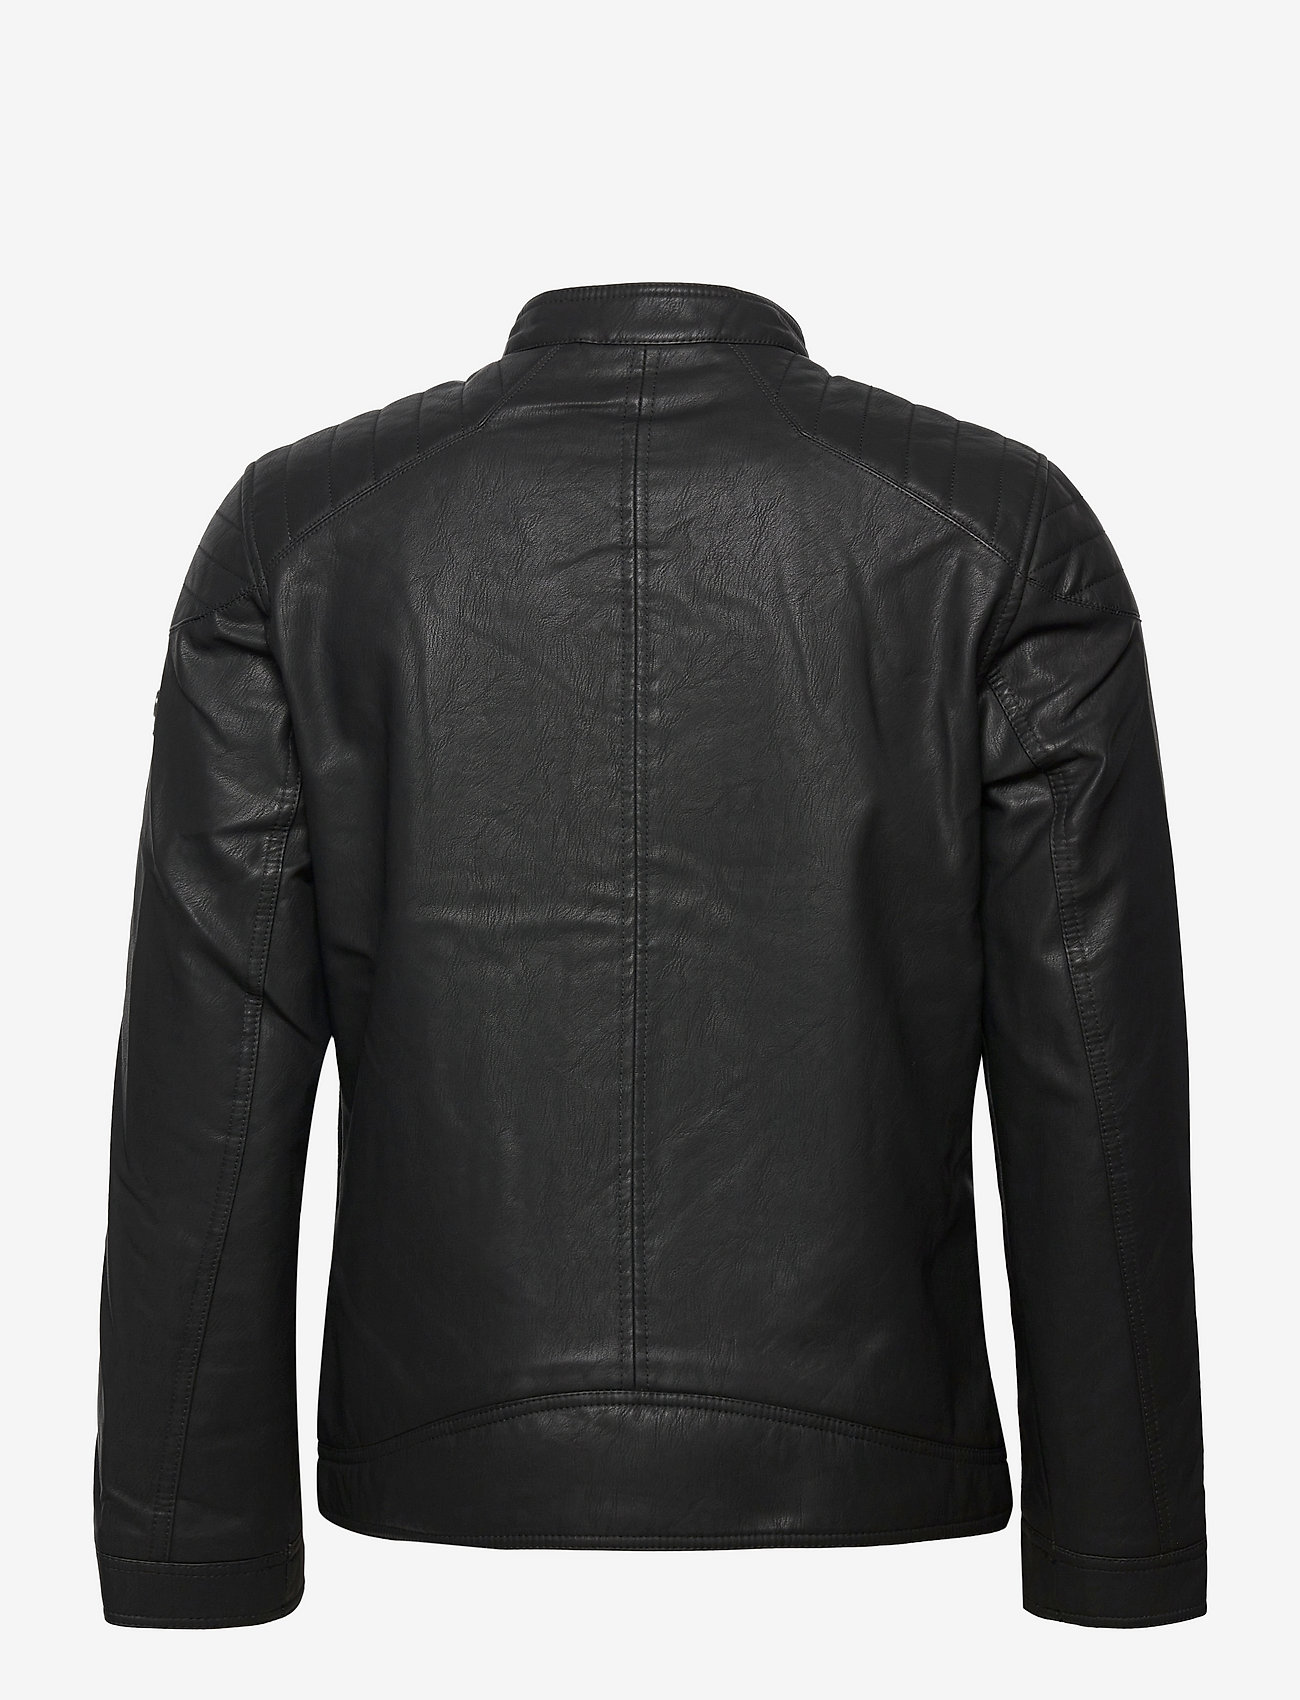 Tom Tailor - fake leather jacket - spring jackets - black - 1